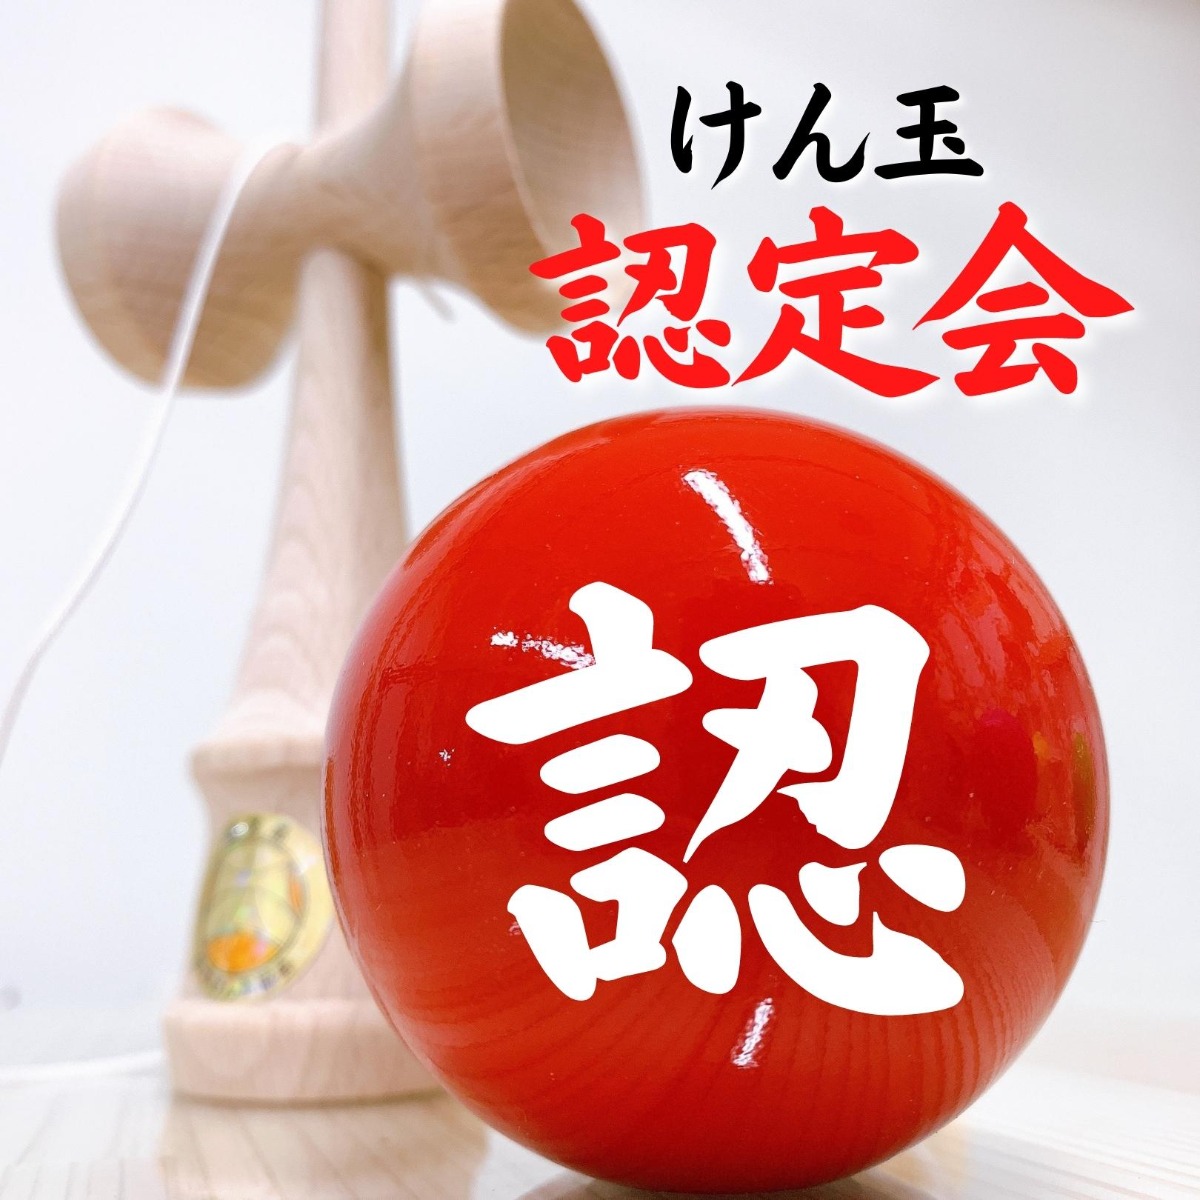 【徳島イベント情報】徳島木のおもちゃ美術館【8月】